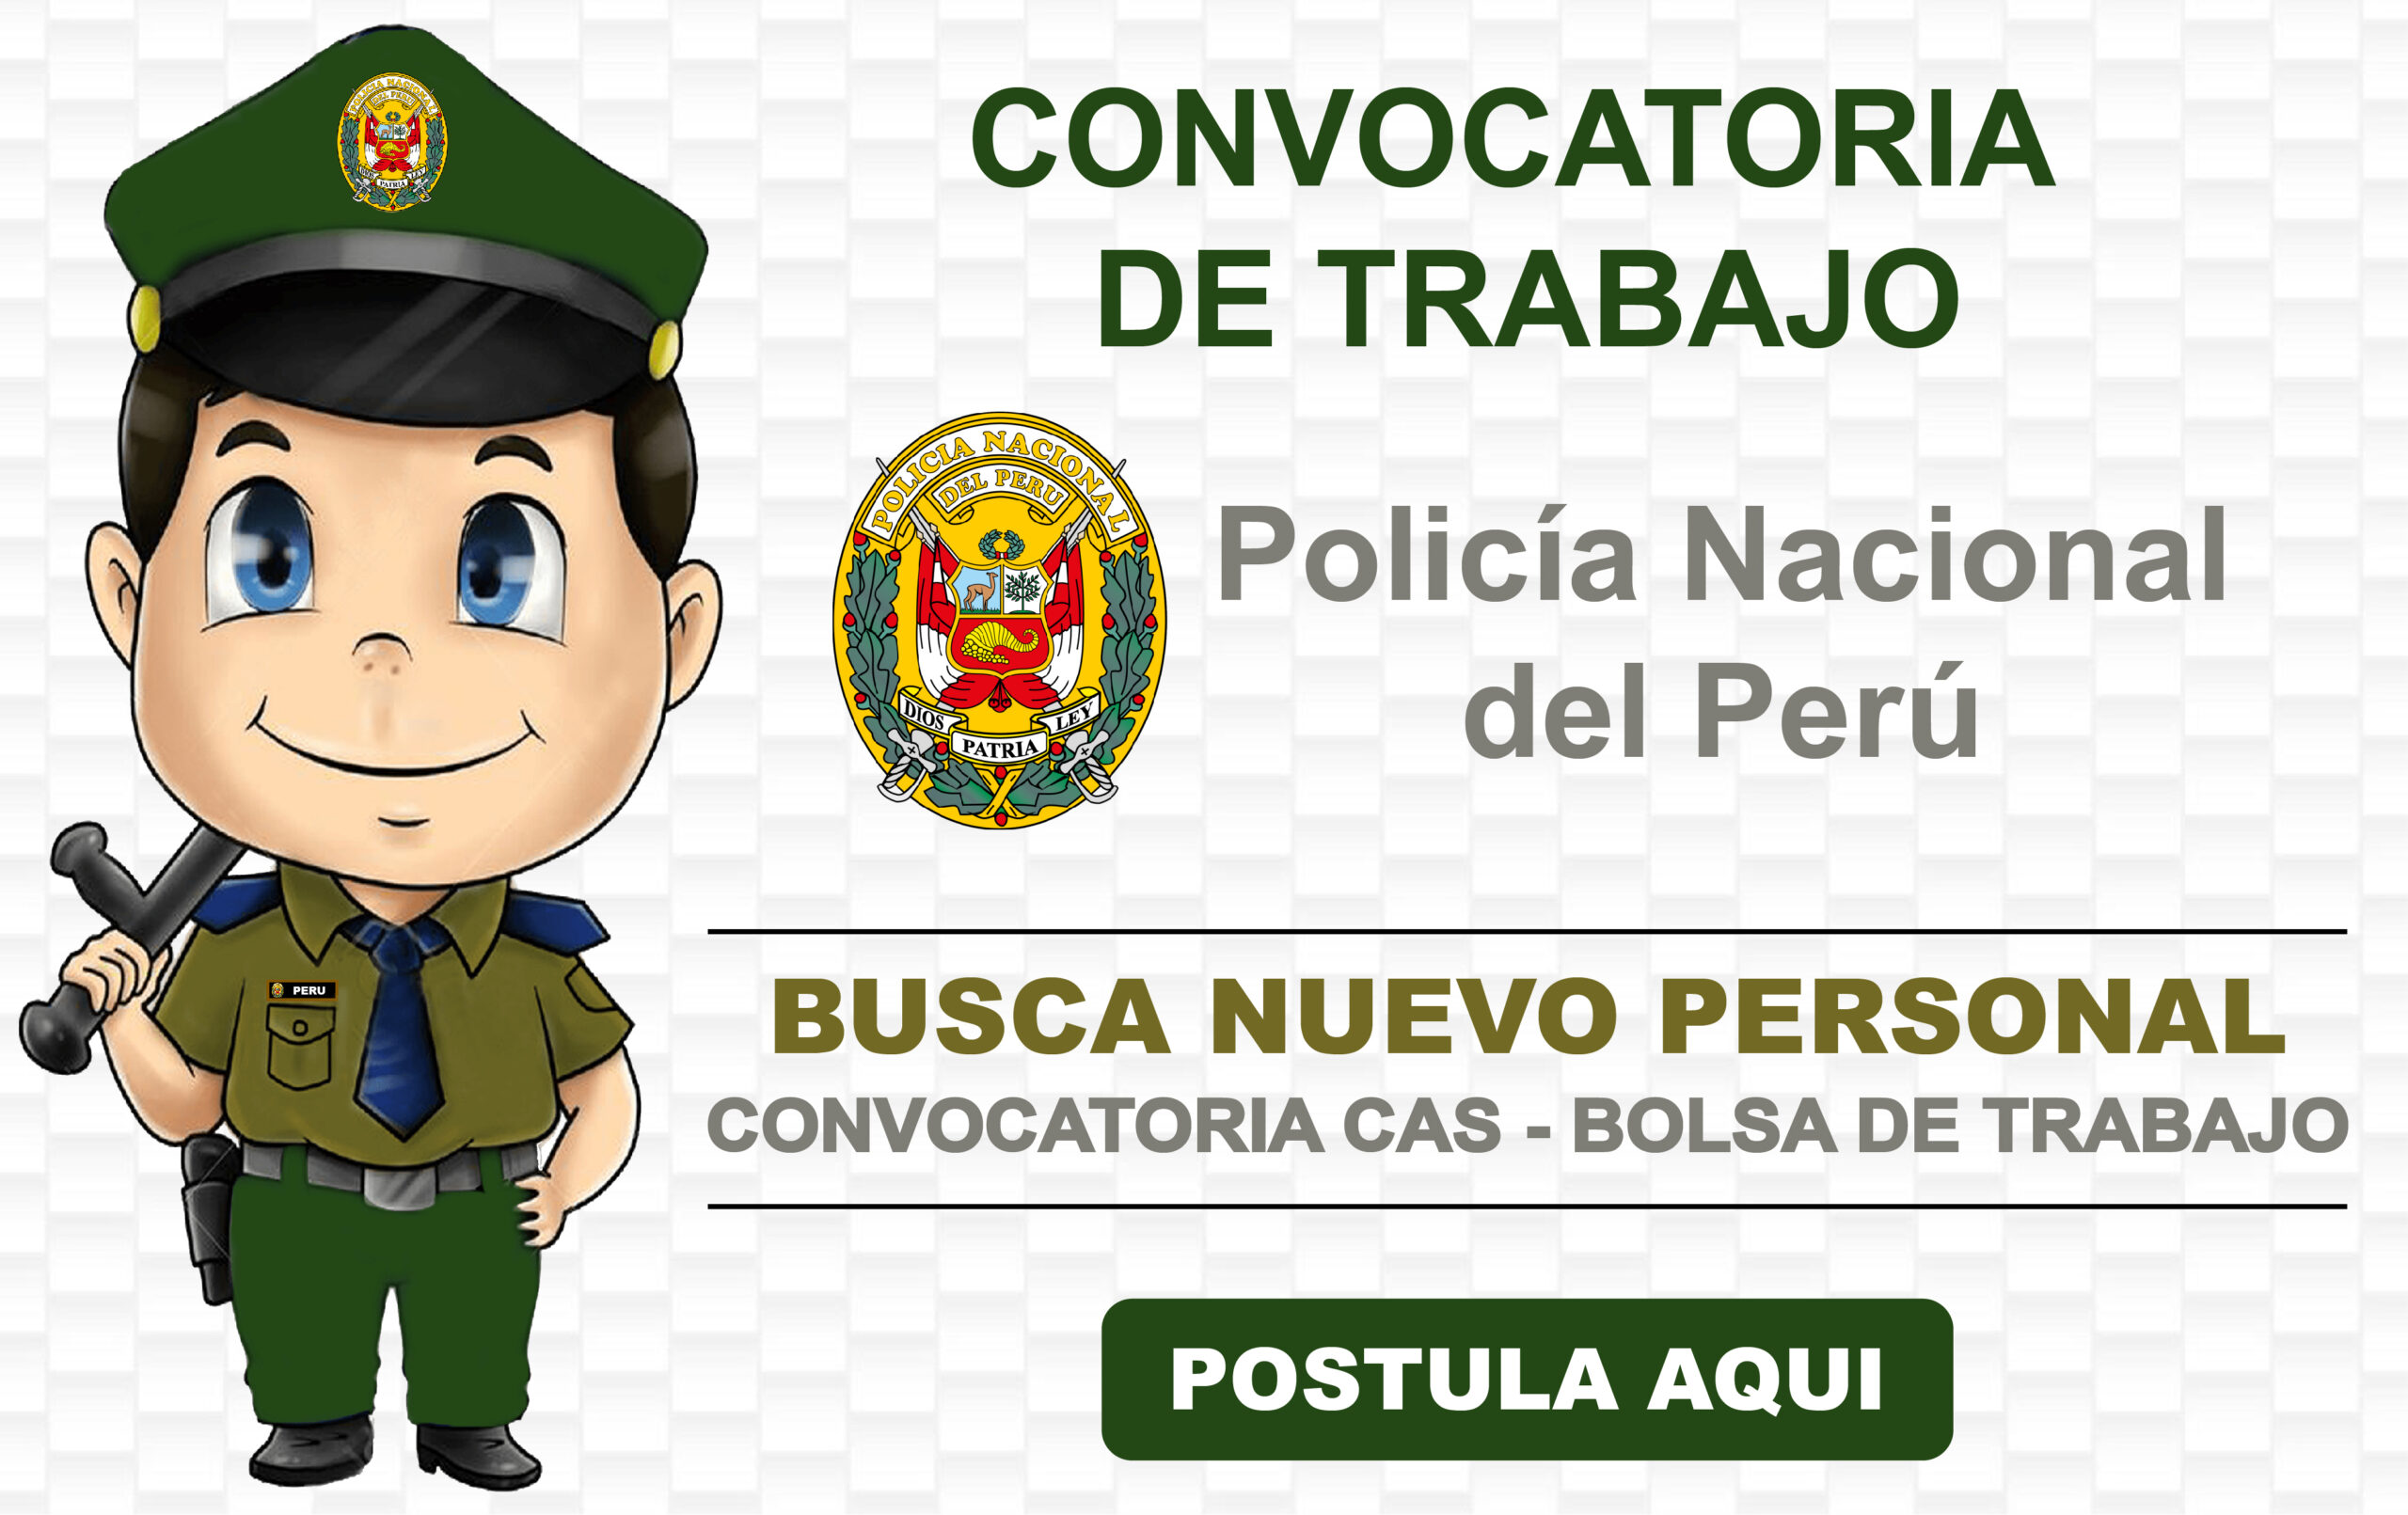 POLICIA NACIONAL DEL PERU: PNP en busca de  personal para nueva convocatoria CAS